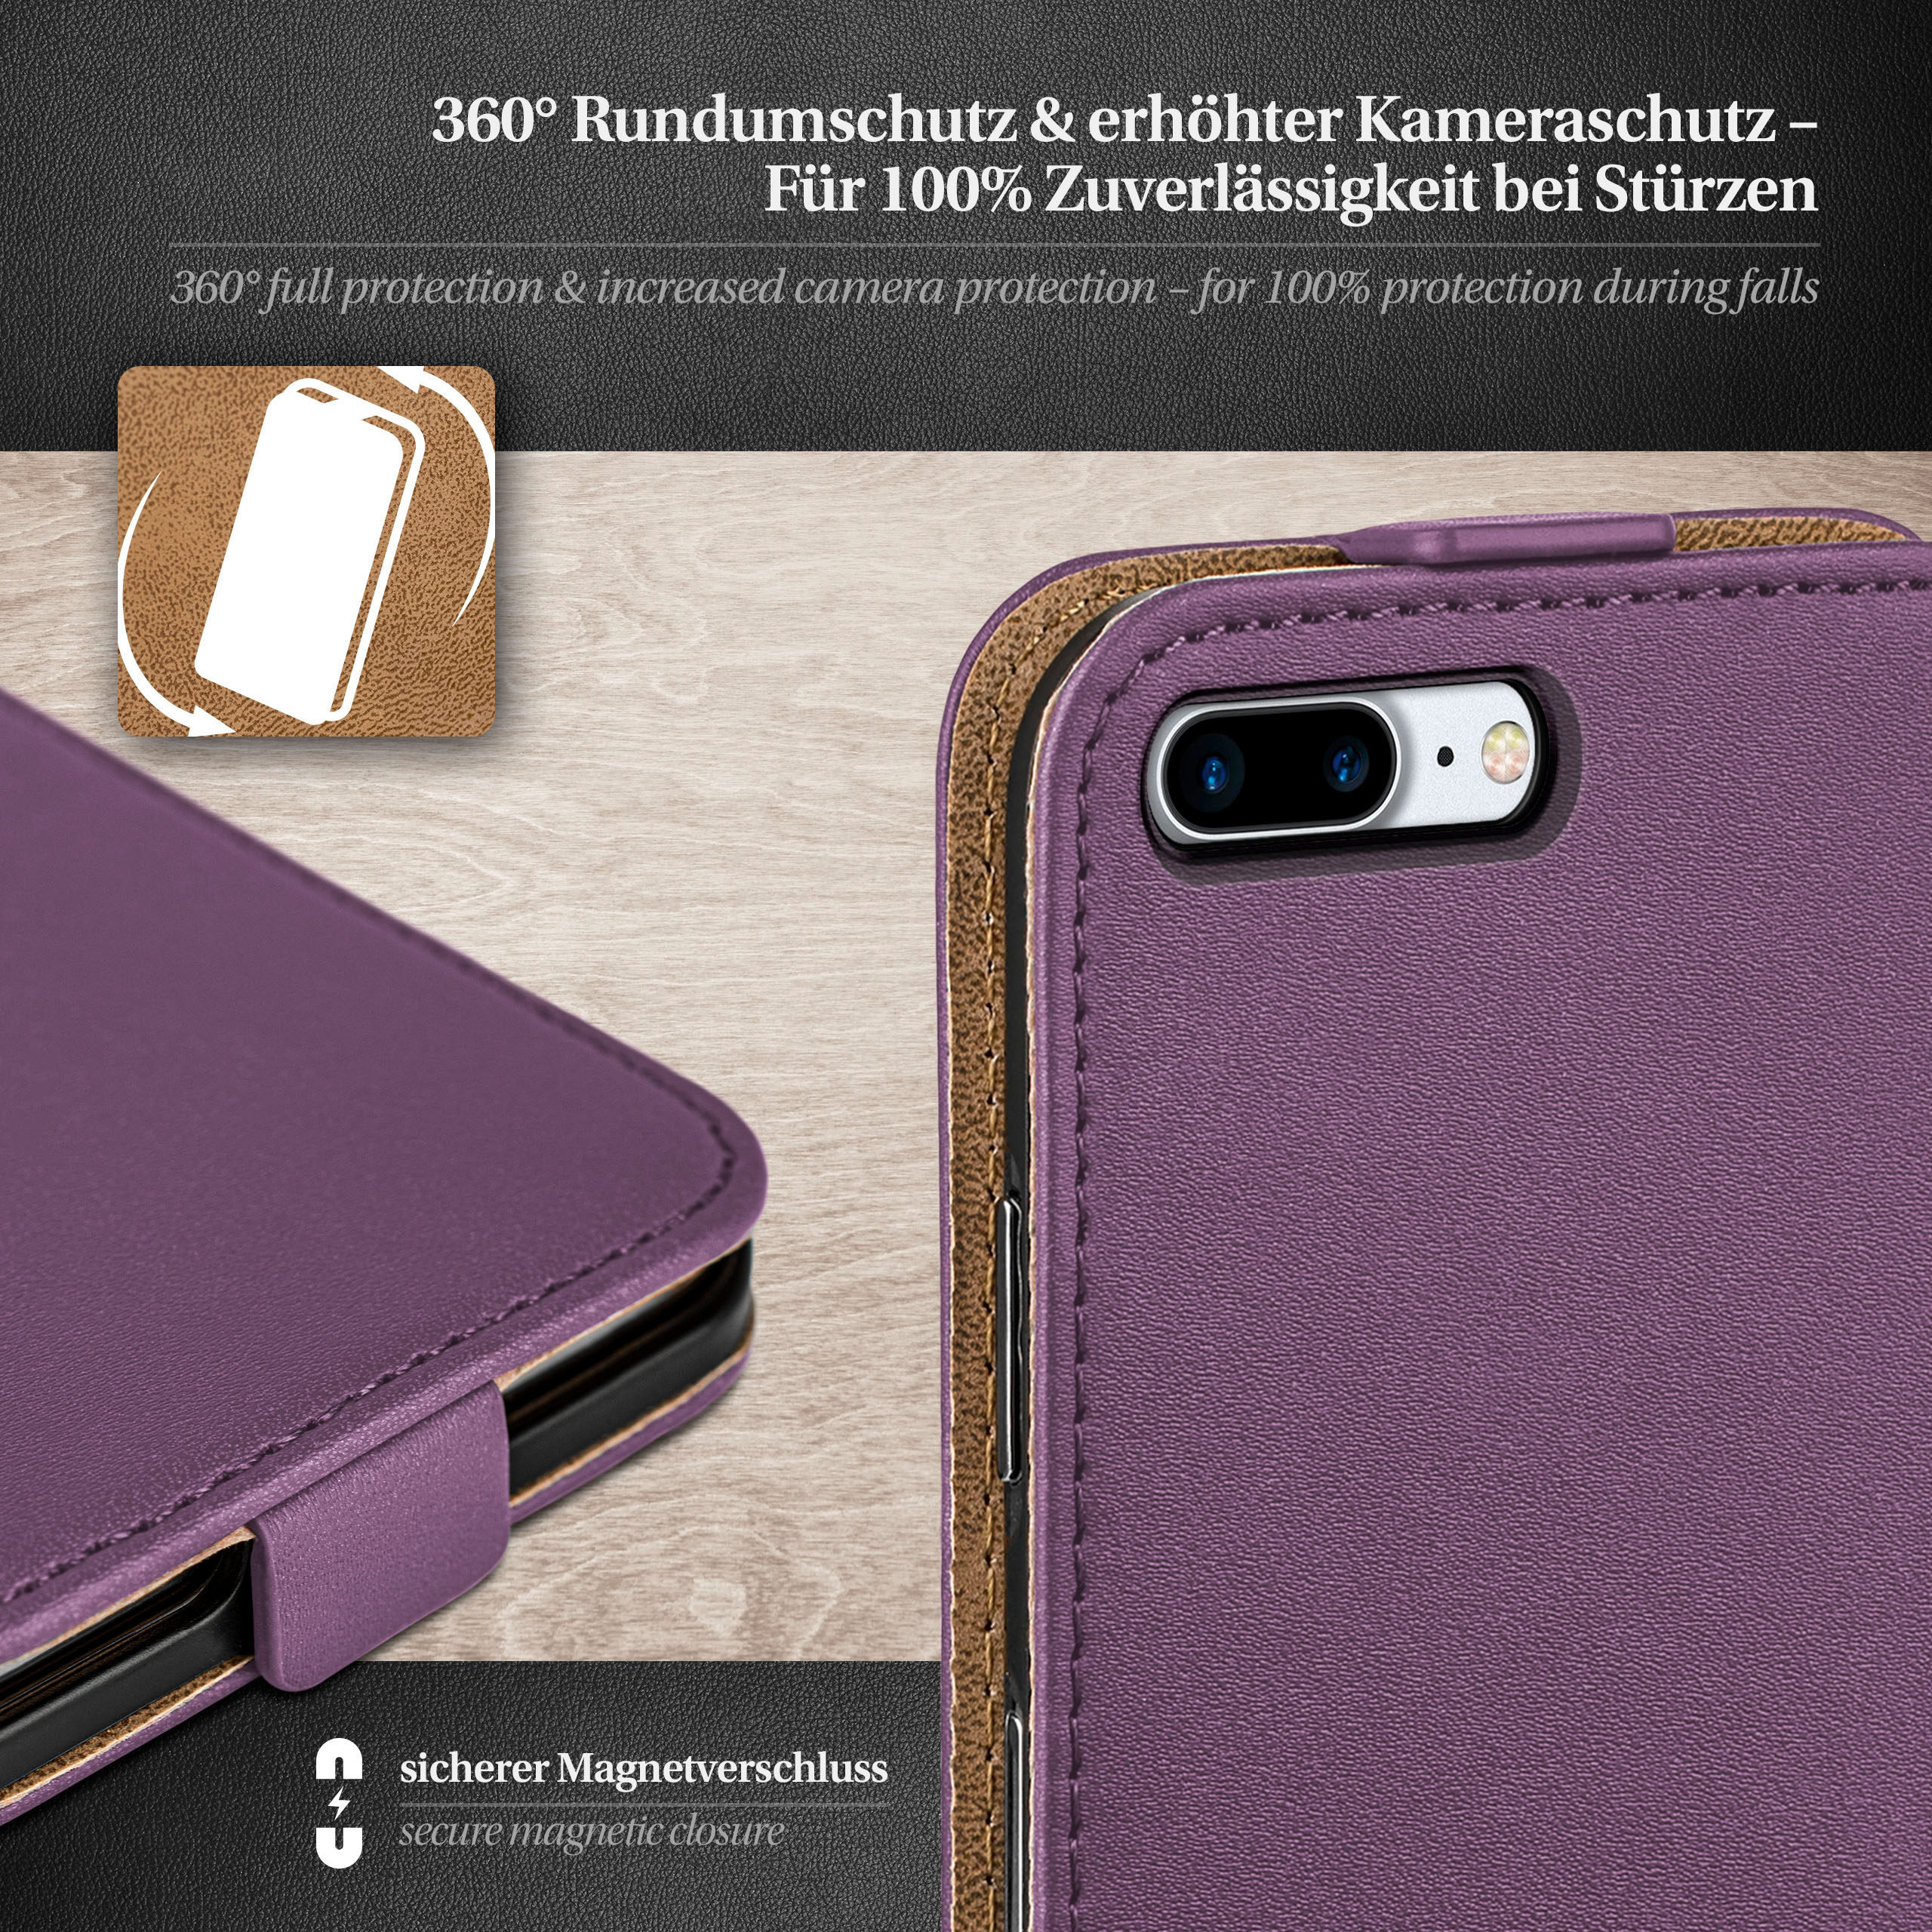 Cover, Flip Plus, iPhone Apple, Flip Indigo-Violet Plus Case, iPhone 8 7 MOEX /